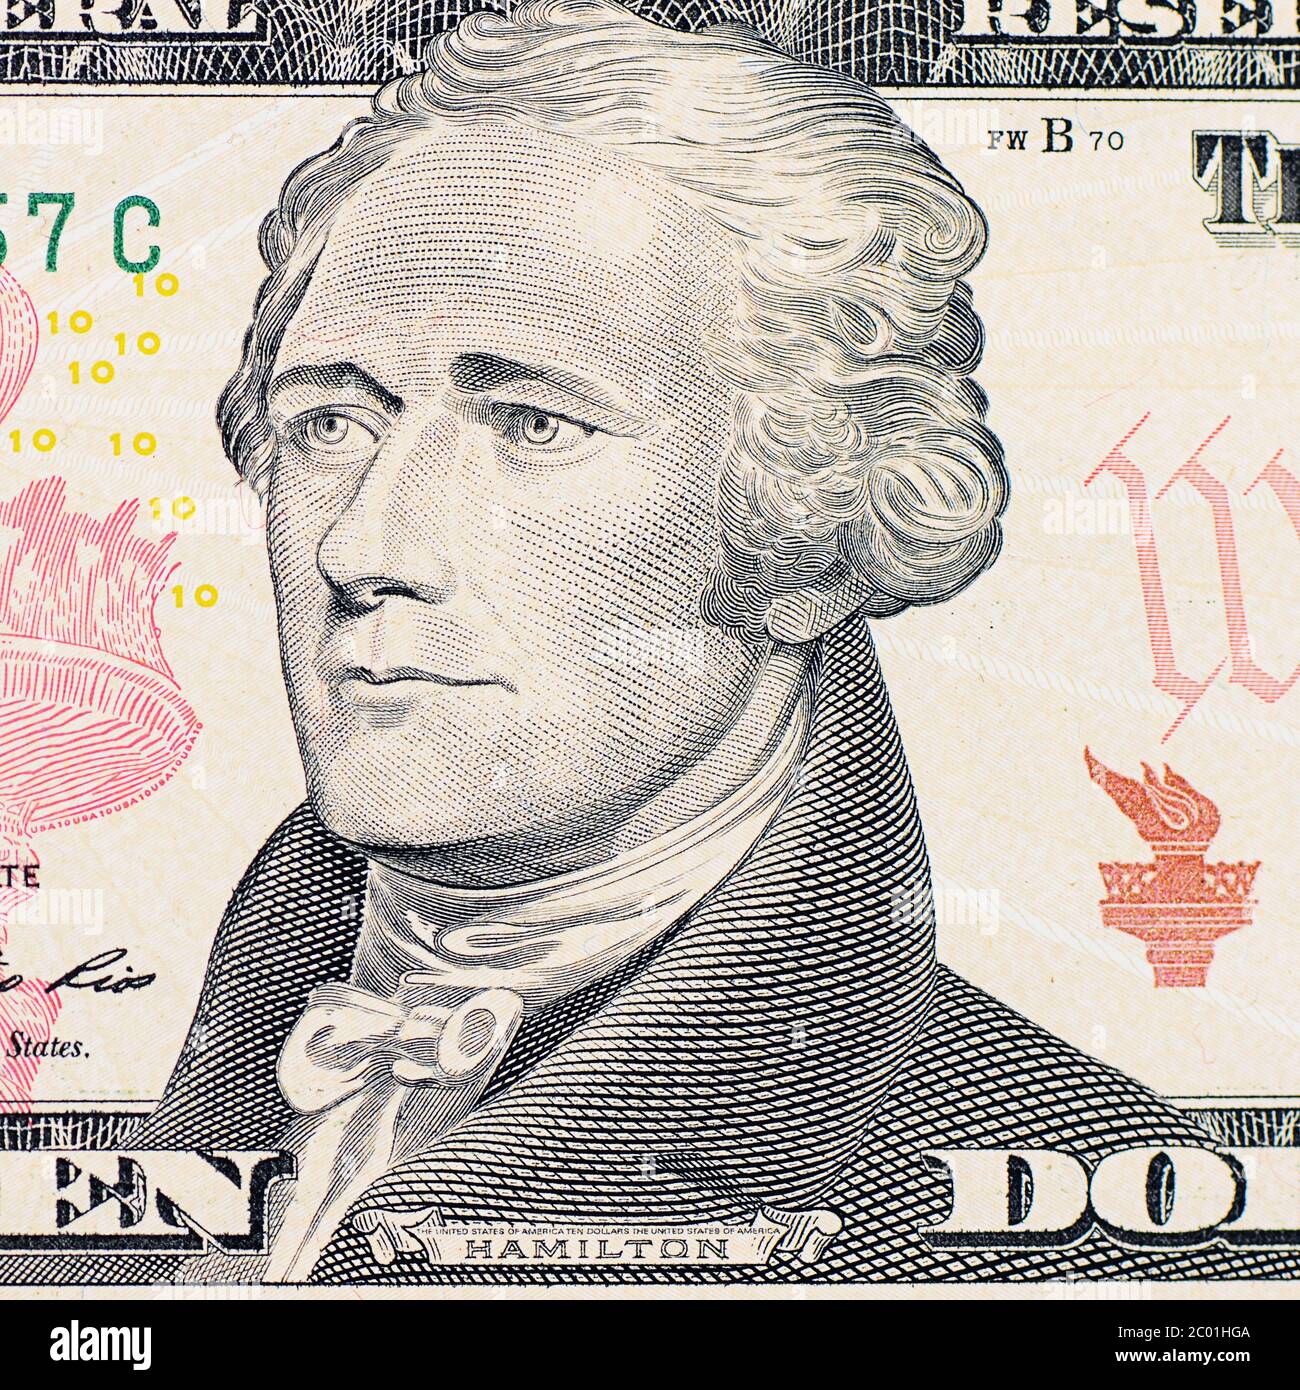 The face  Hamilton the dollar bill Stock Photo